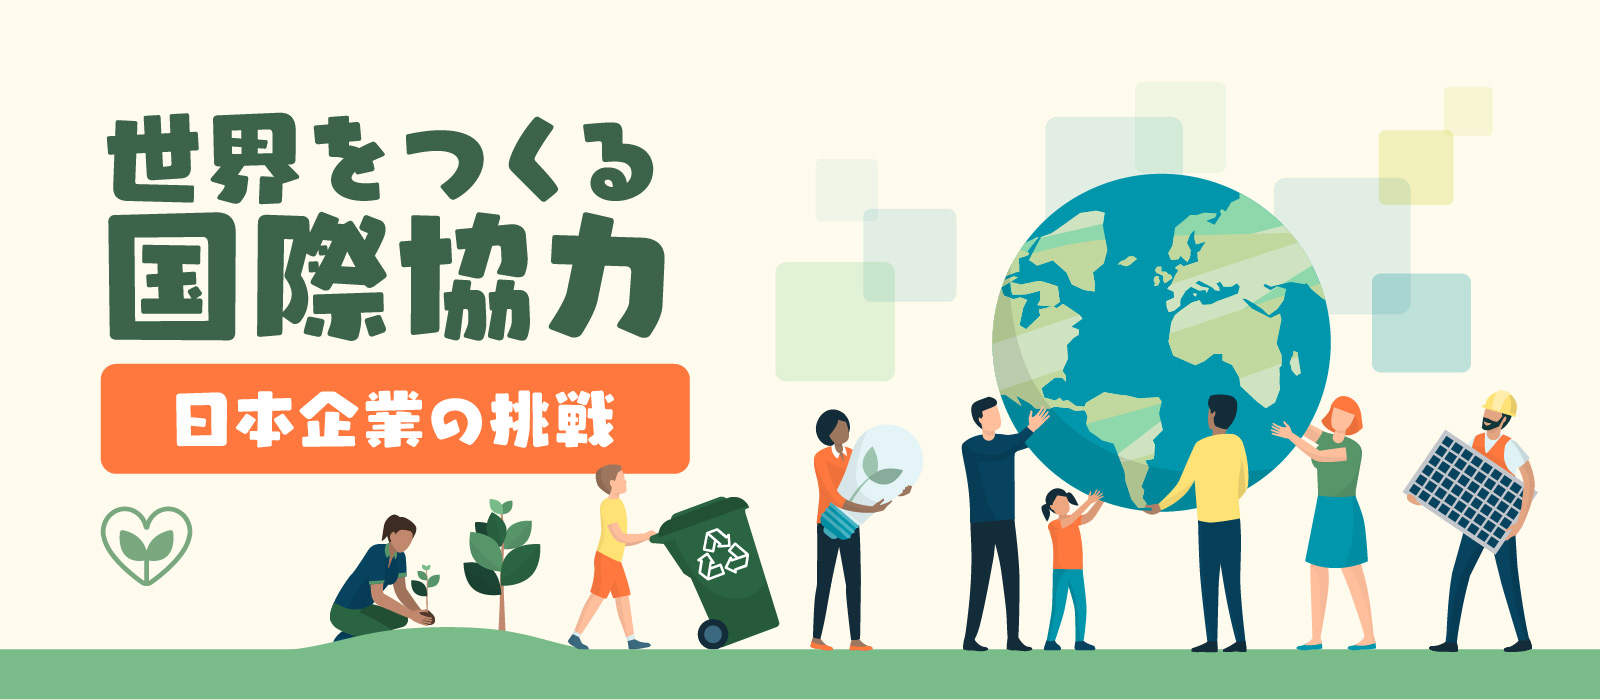 世界をつくる国際協力 日本企業の挑戦